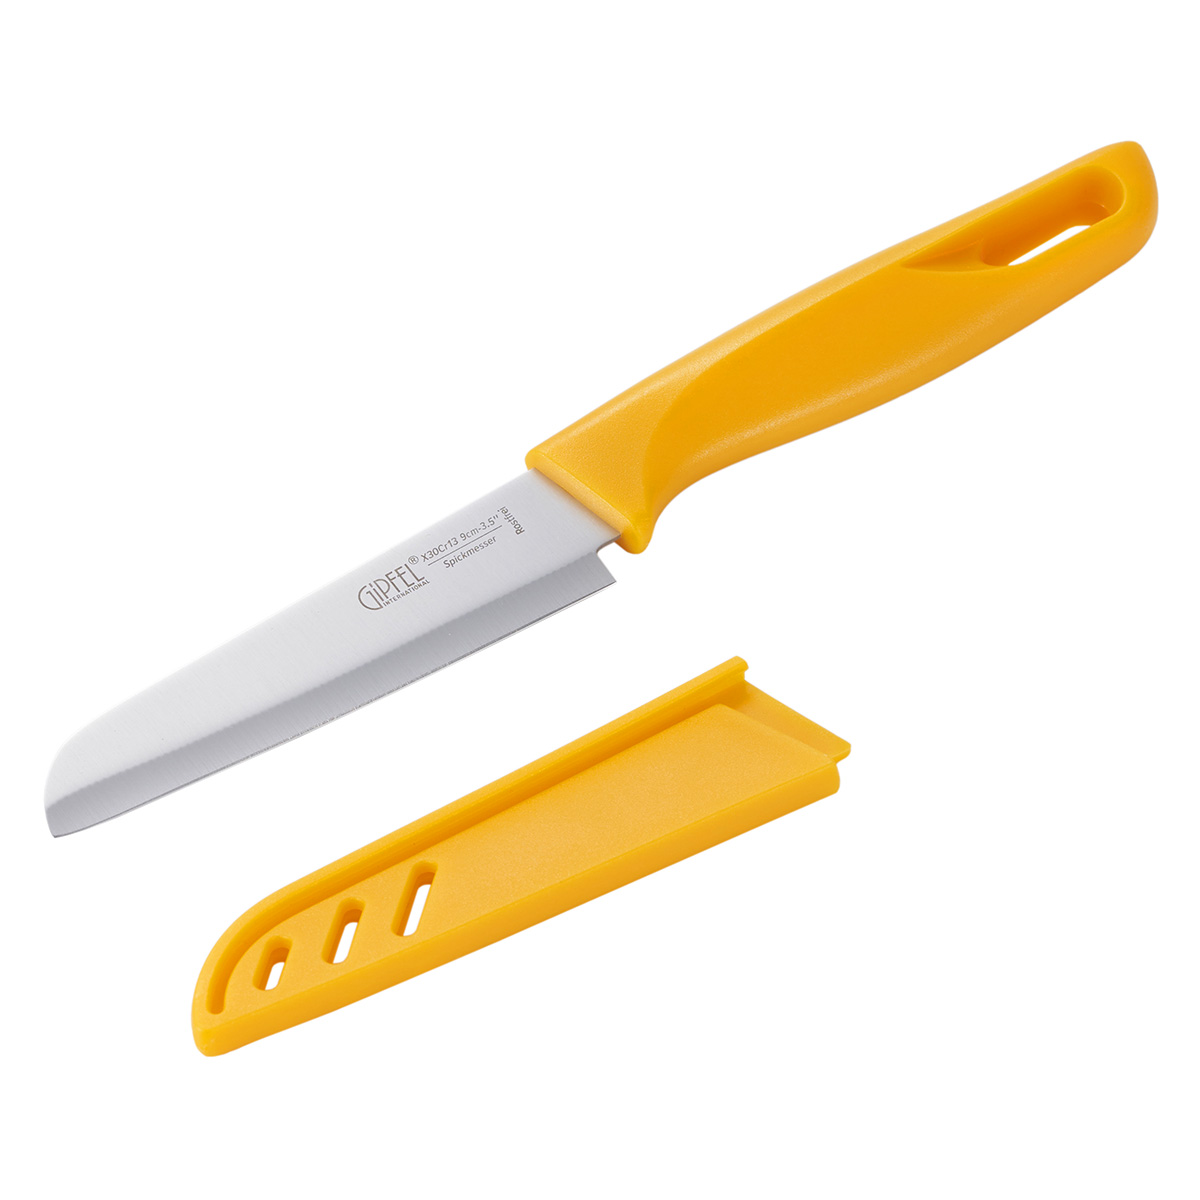 Нож для чистки овощей Fiskars ➤ Купить по низкой цене нож для очистки овощей с доставкой по Украине